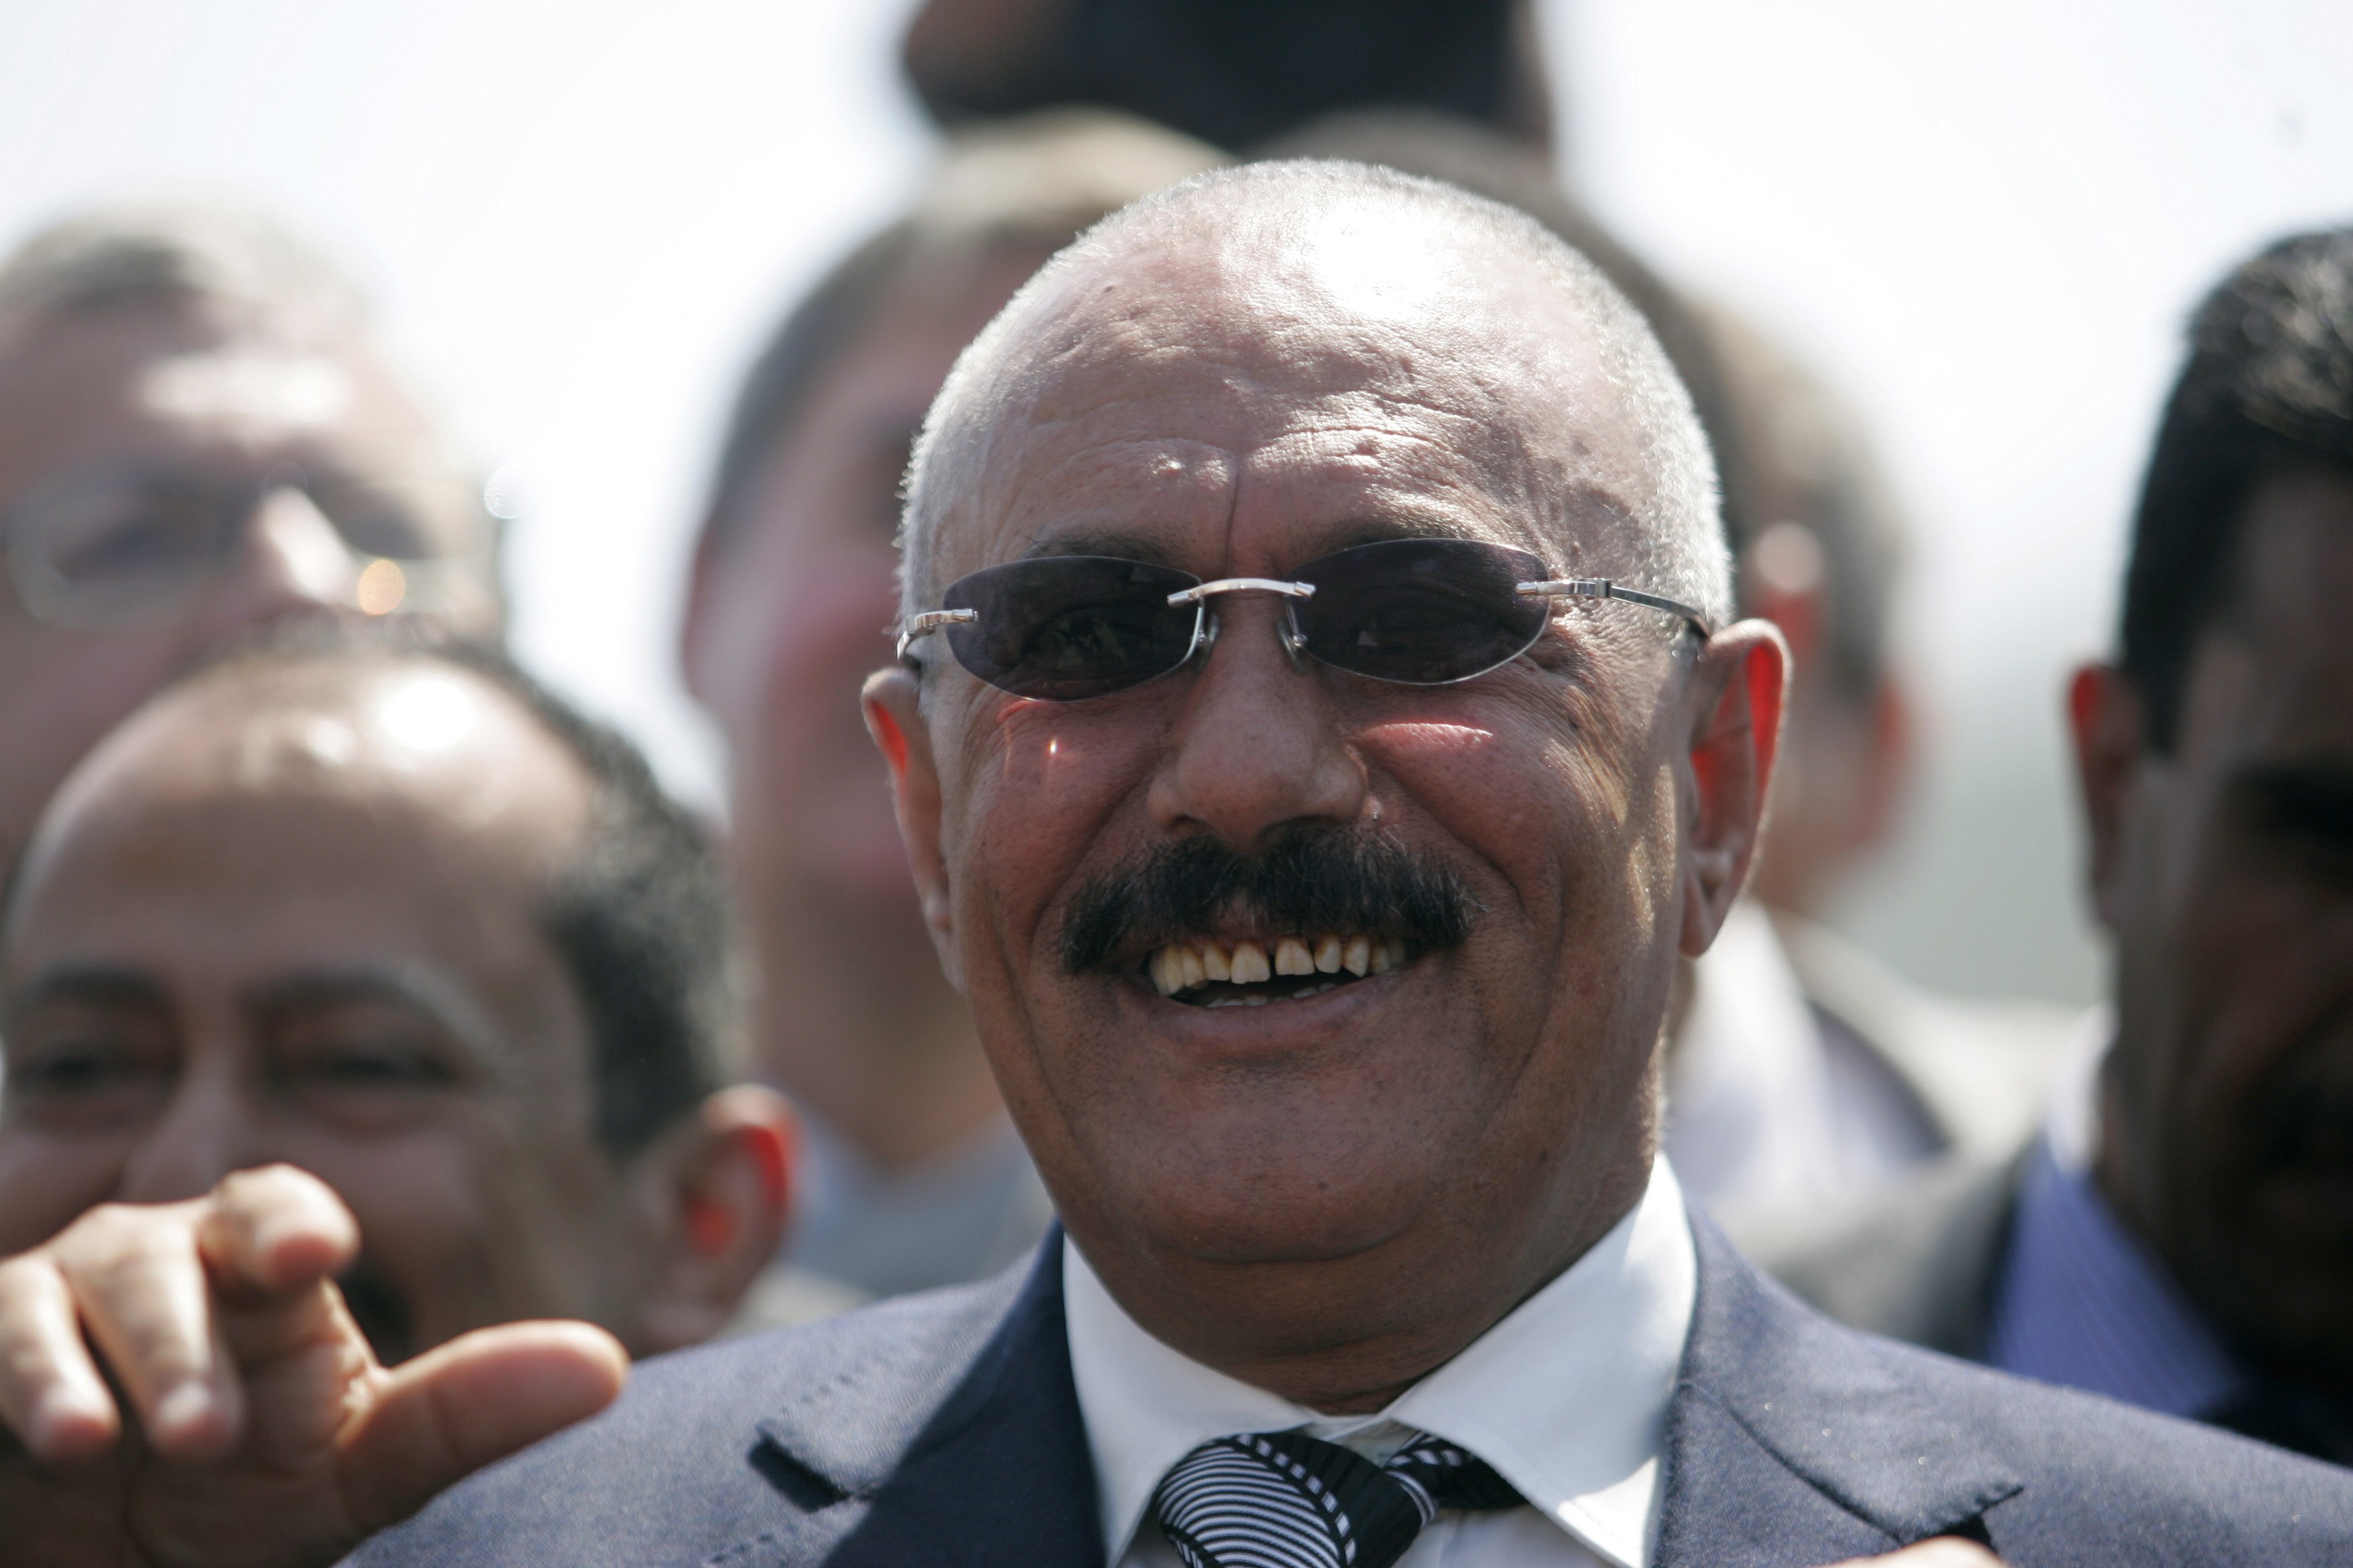 دبلوماسي غربي : صالح لن يعود قريباً وواشنطن والرياض تضغطان عليه لتسليم السلطة